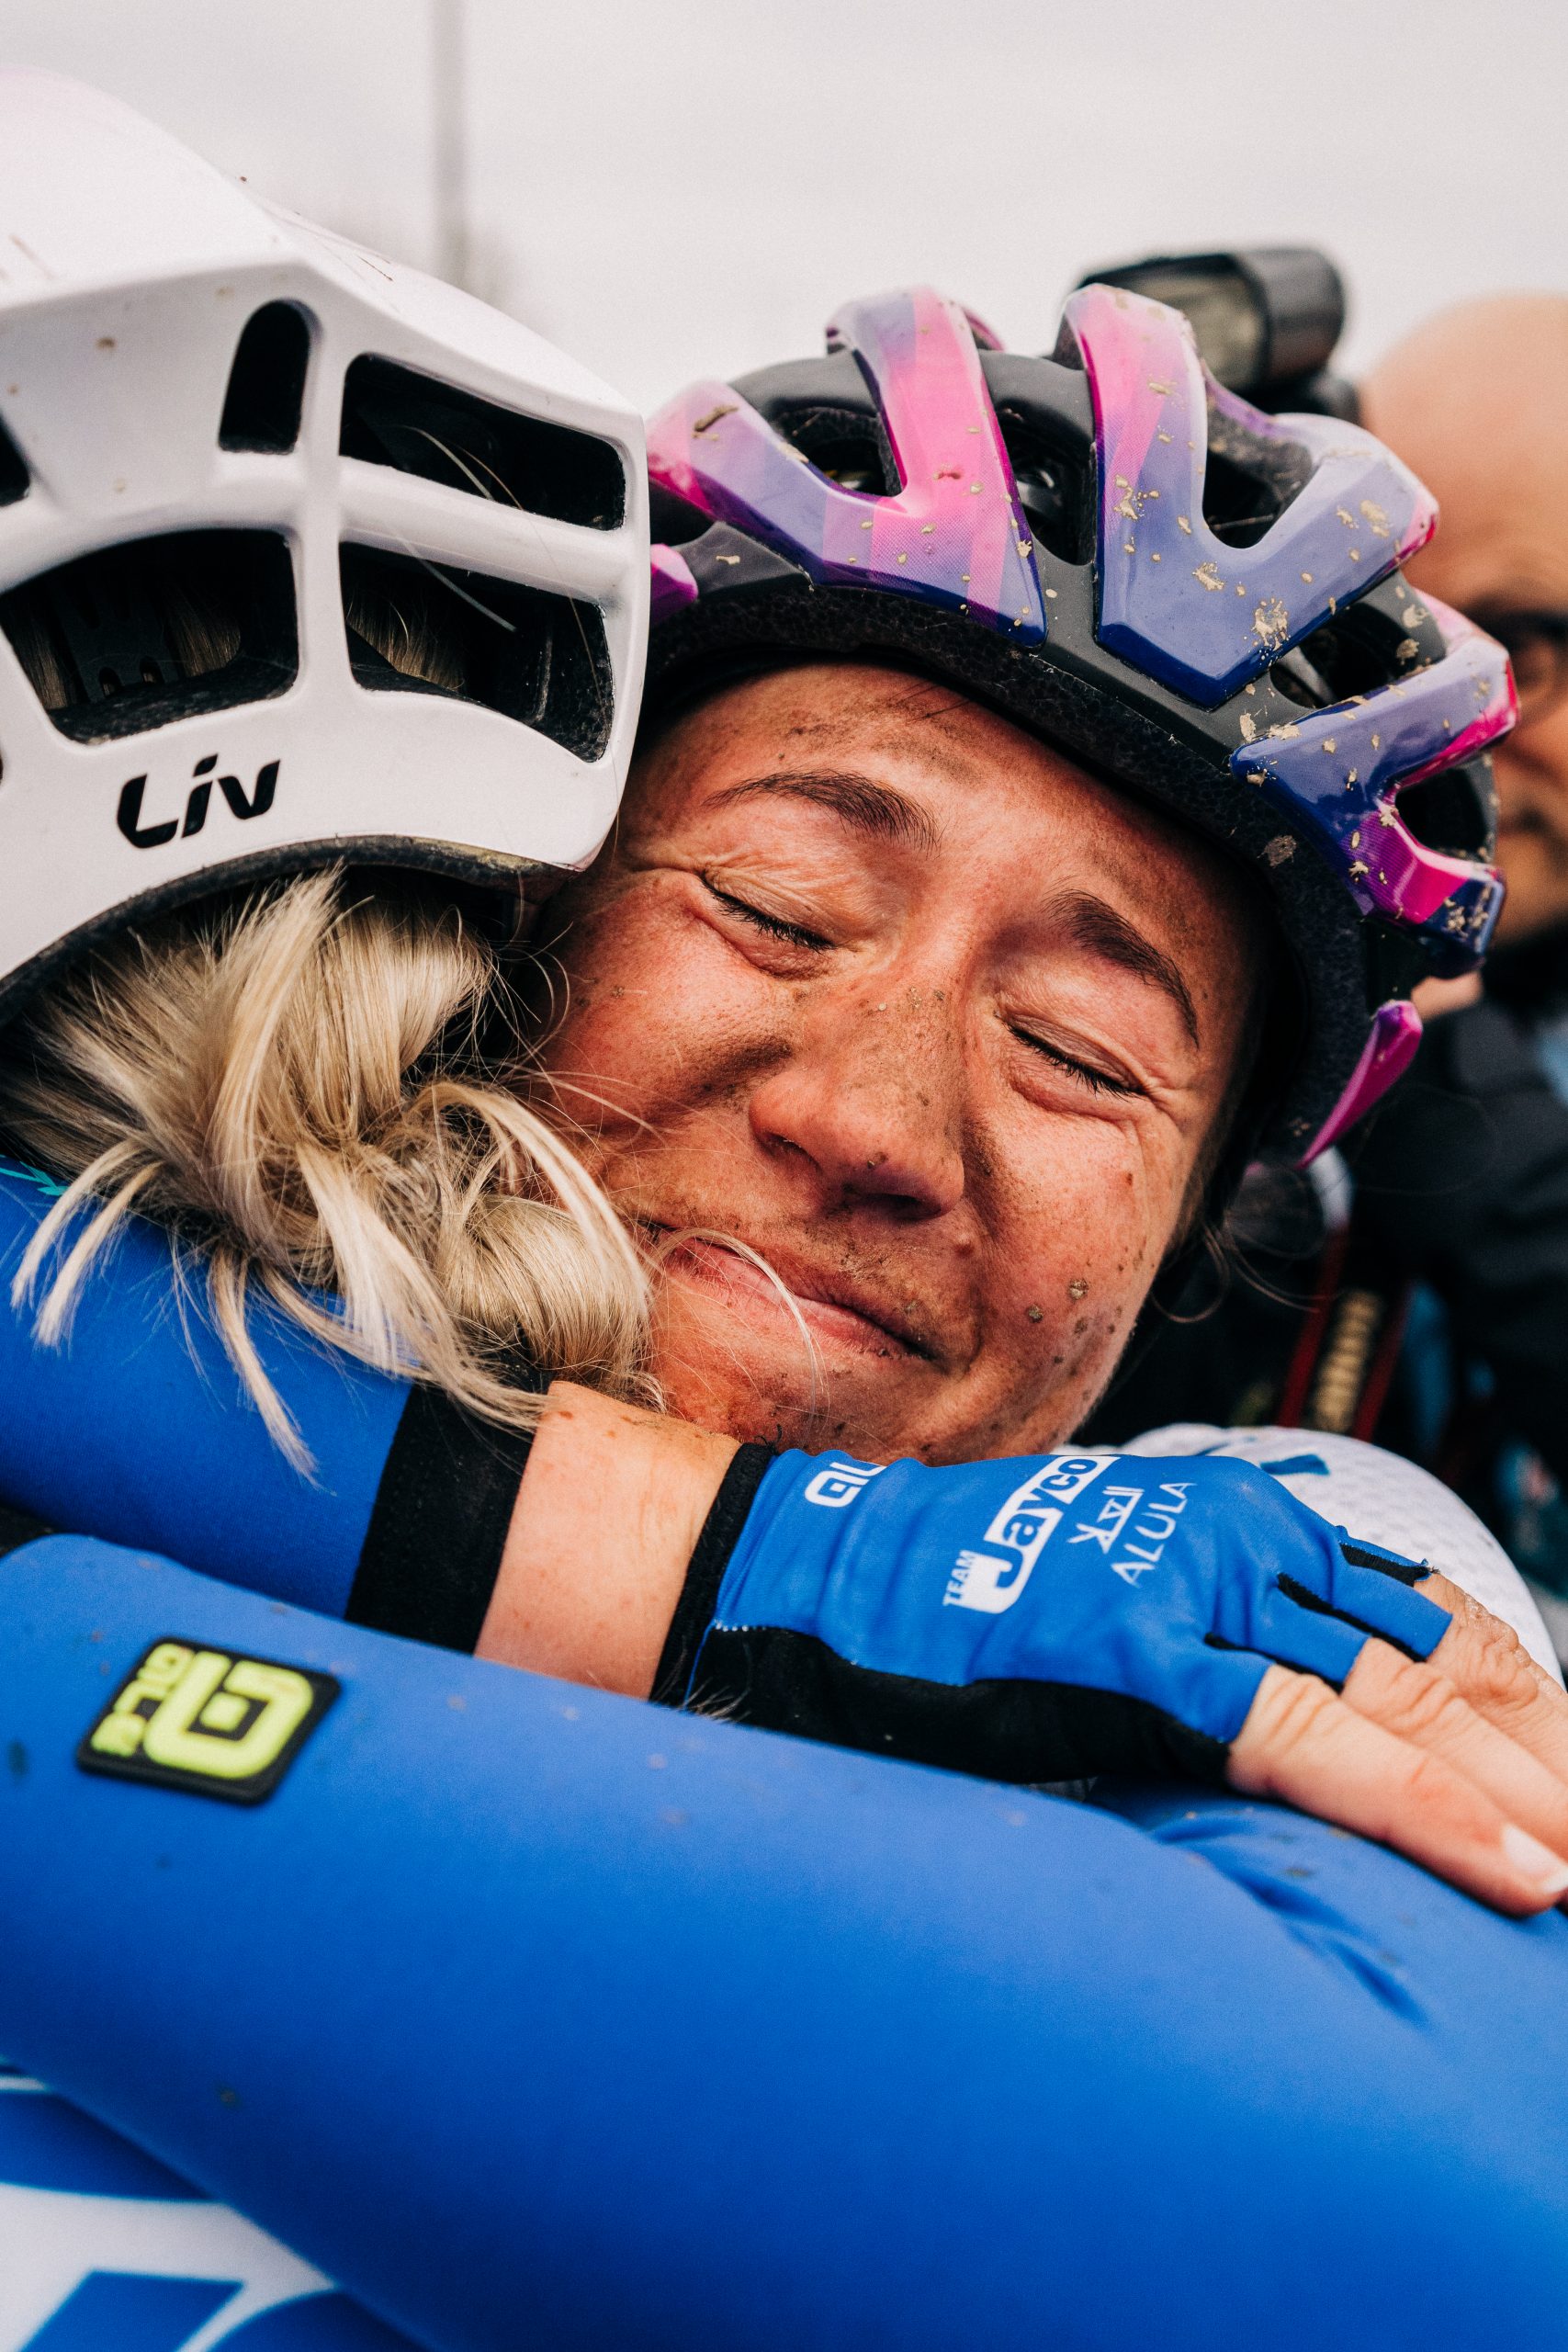 riders hugging at Paris-Roubaix Femmes finish